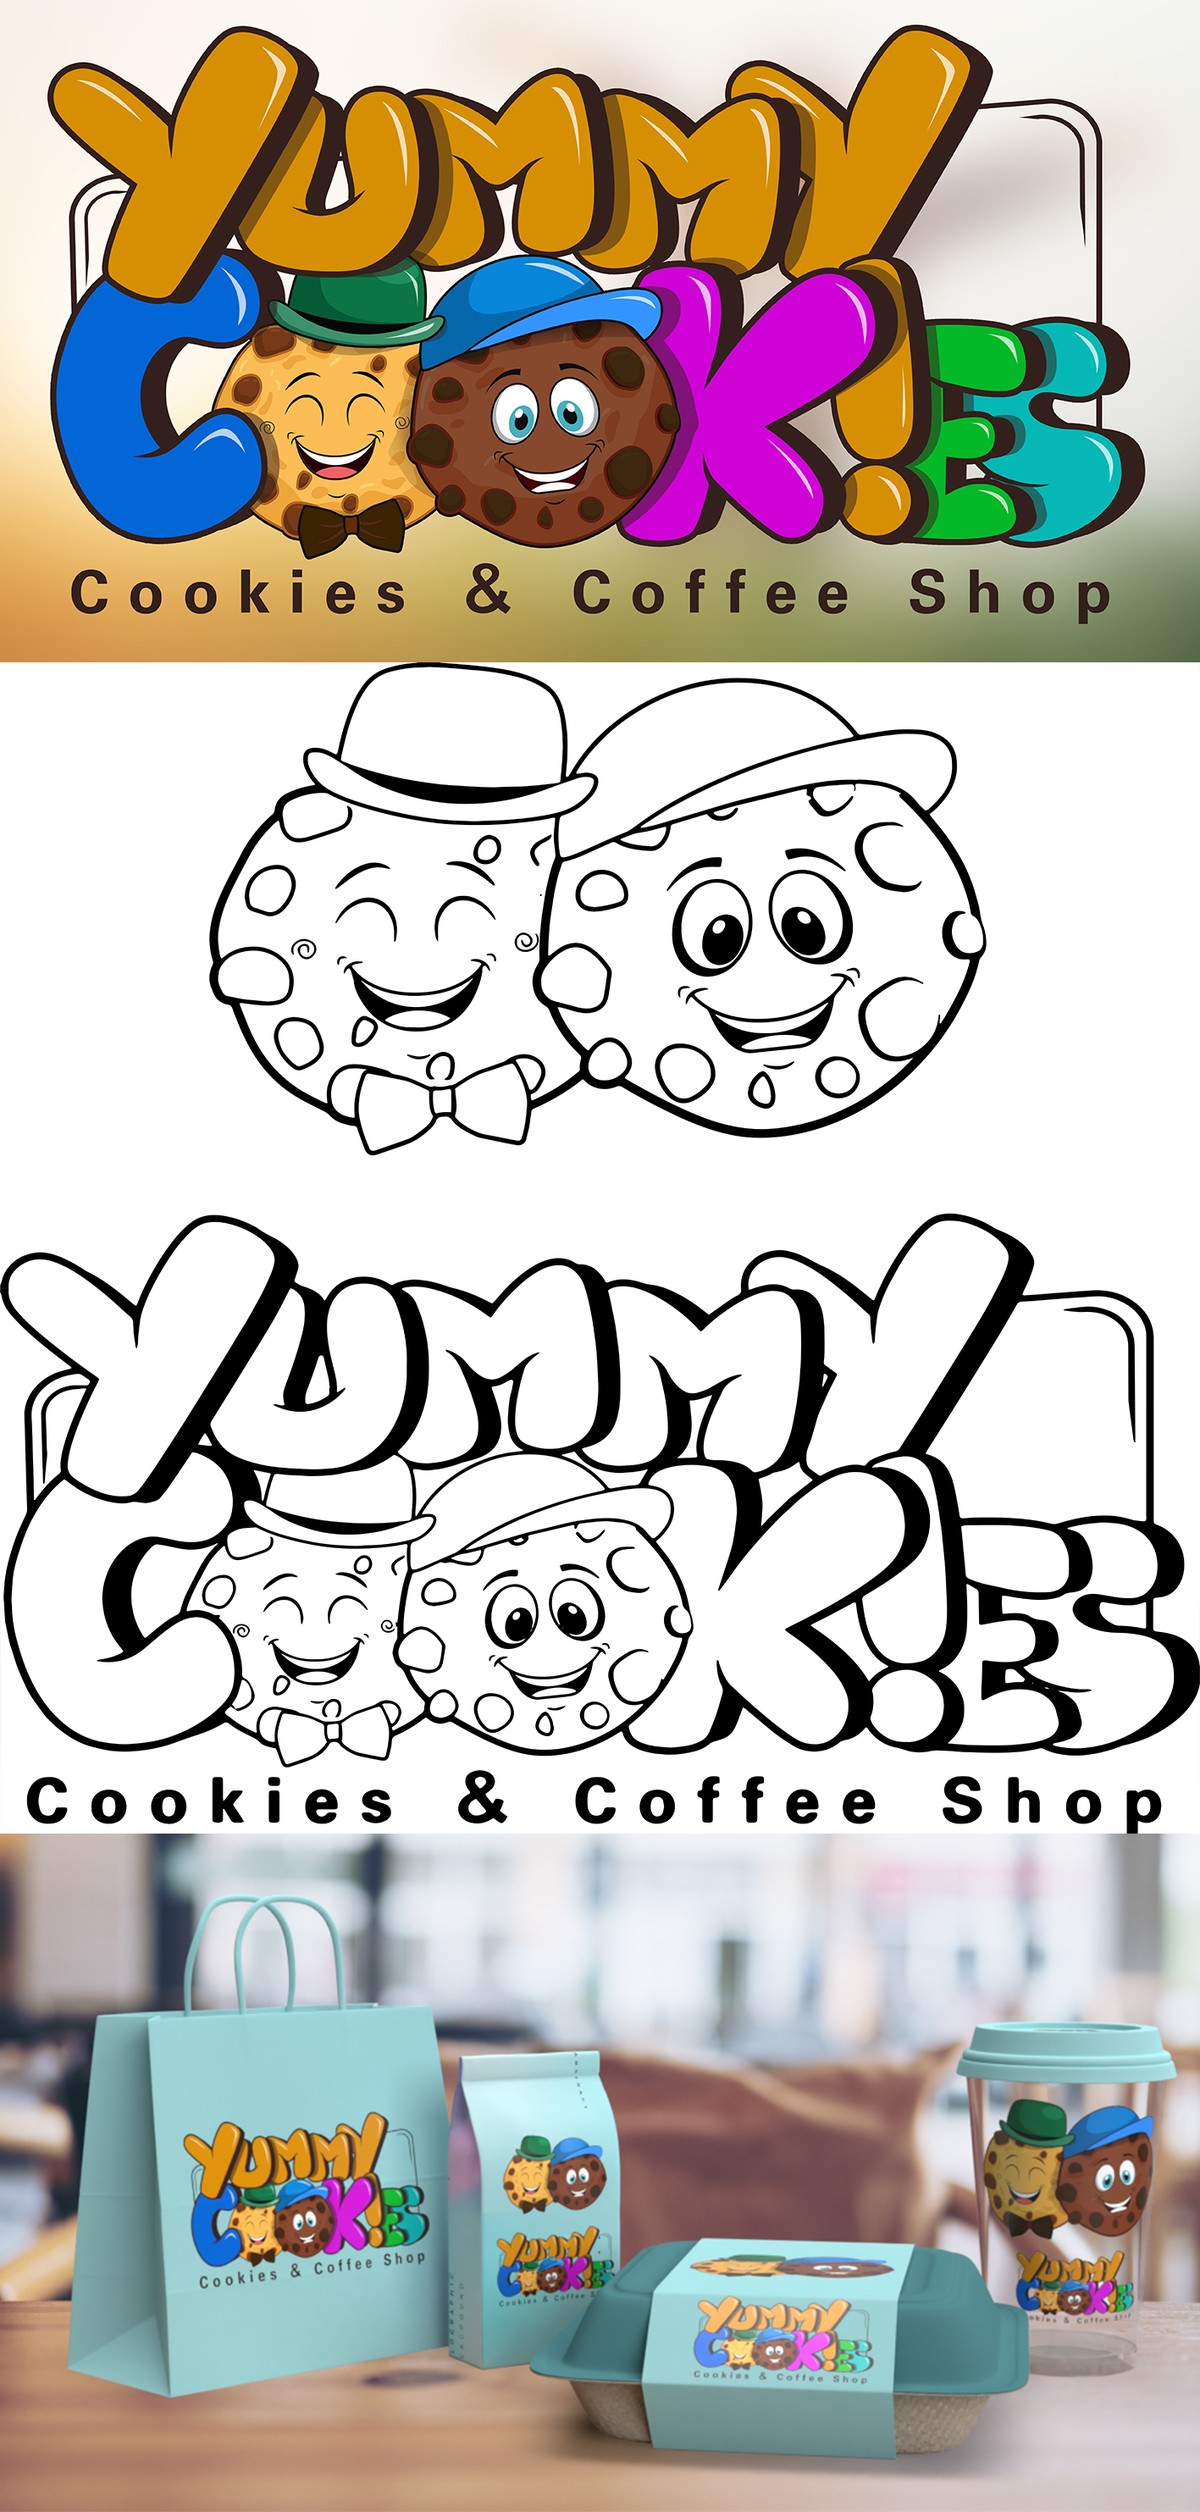 Cookies_logo